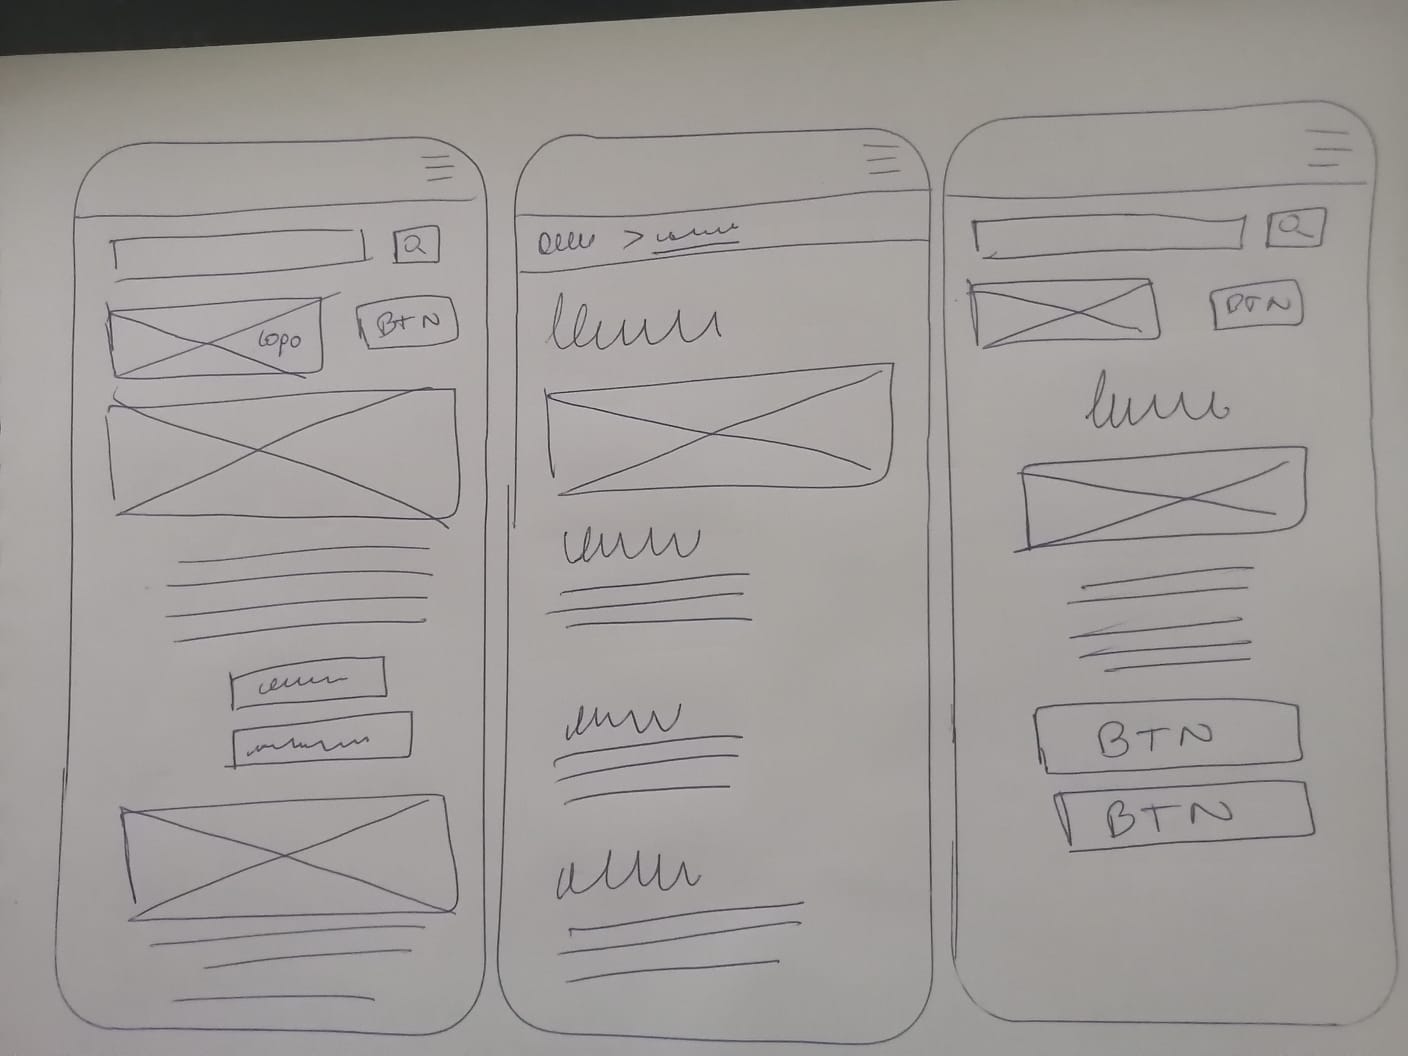 Diseño de prototipos de papel para validar la experiencia de usuario.